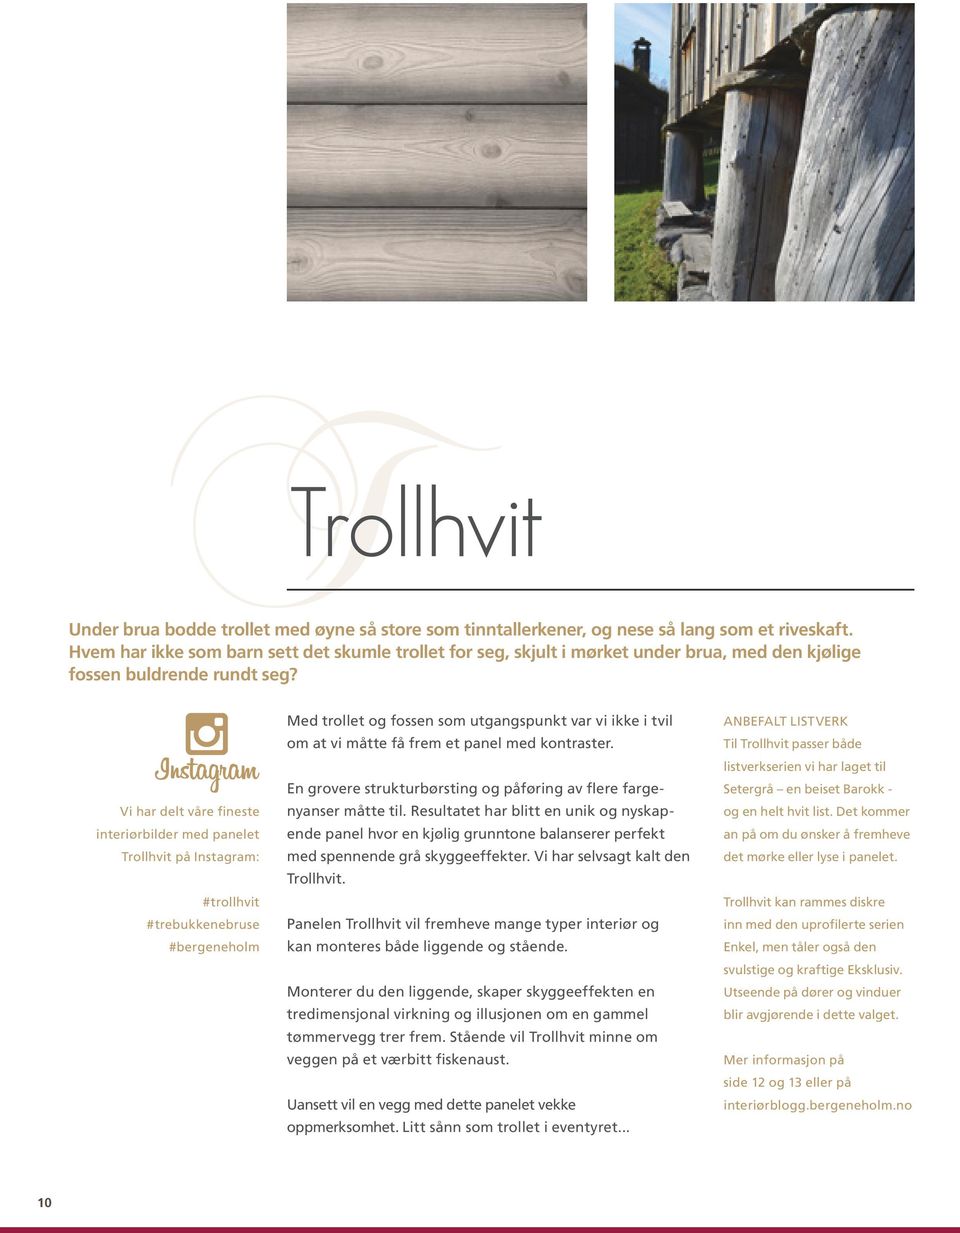 Vi har delt våre fineste interiørbilder med panelet Trollhvit på Instagram: #trollhvit #trebukkenebruse #bergeneholm Med trollet og fossen som utgangspunkt var vi ikke i tvil om at vi måtte få frem